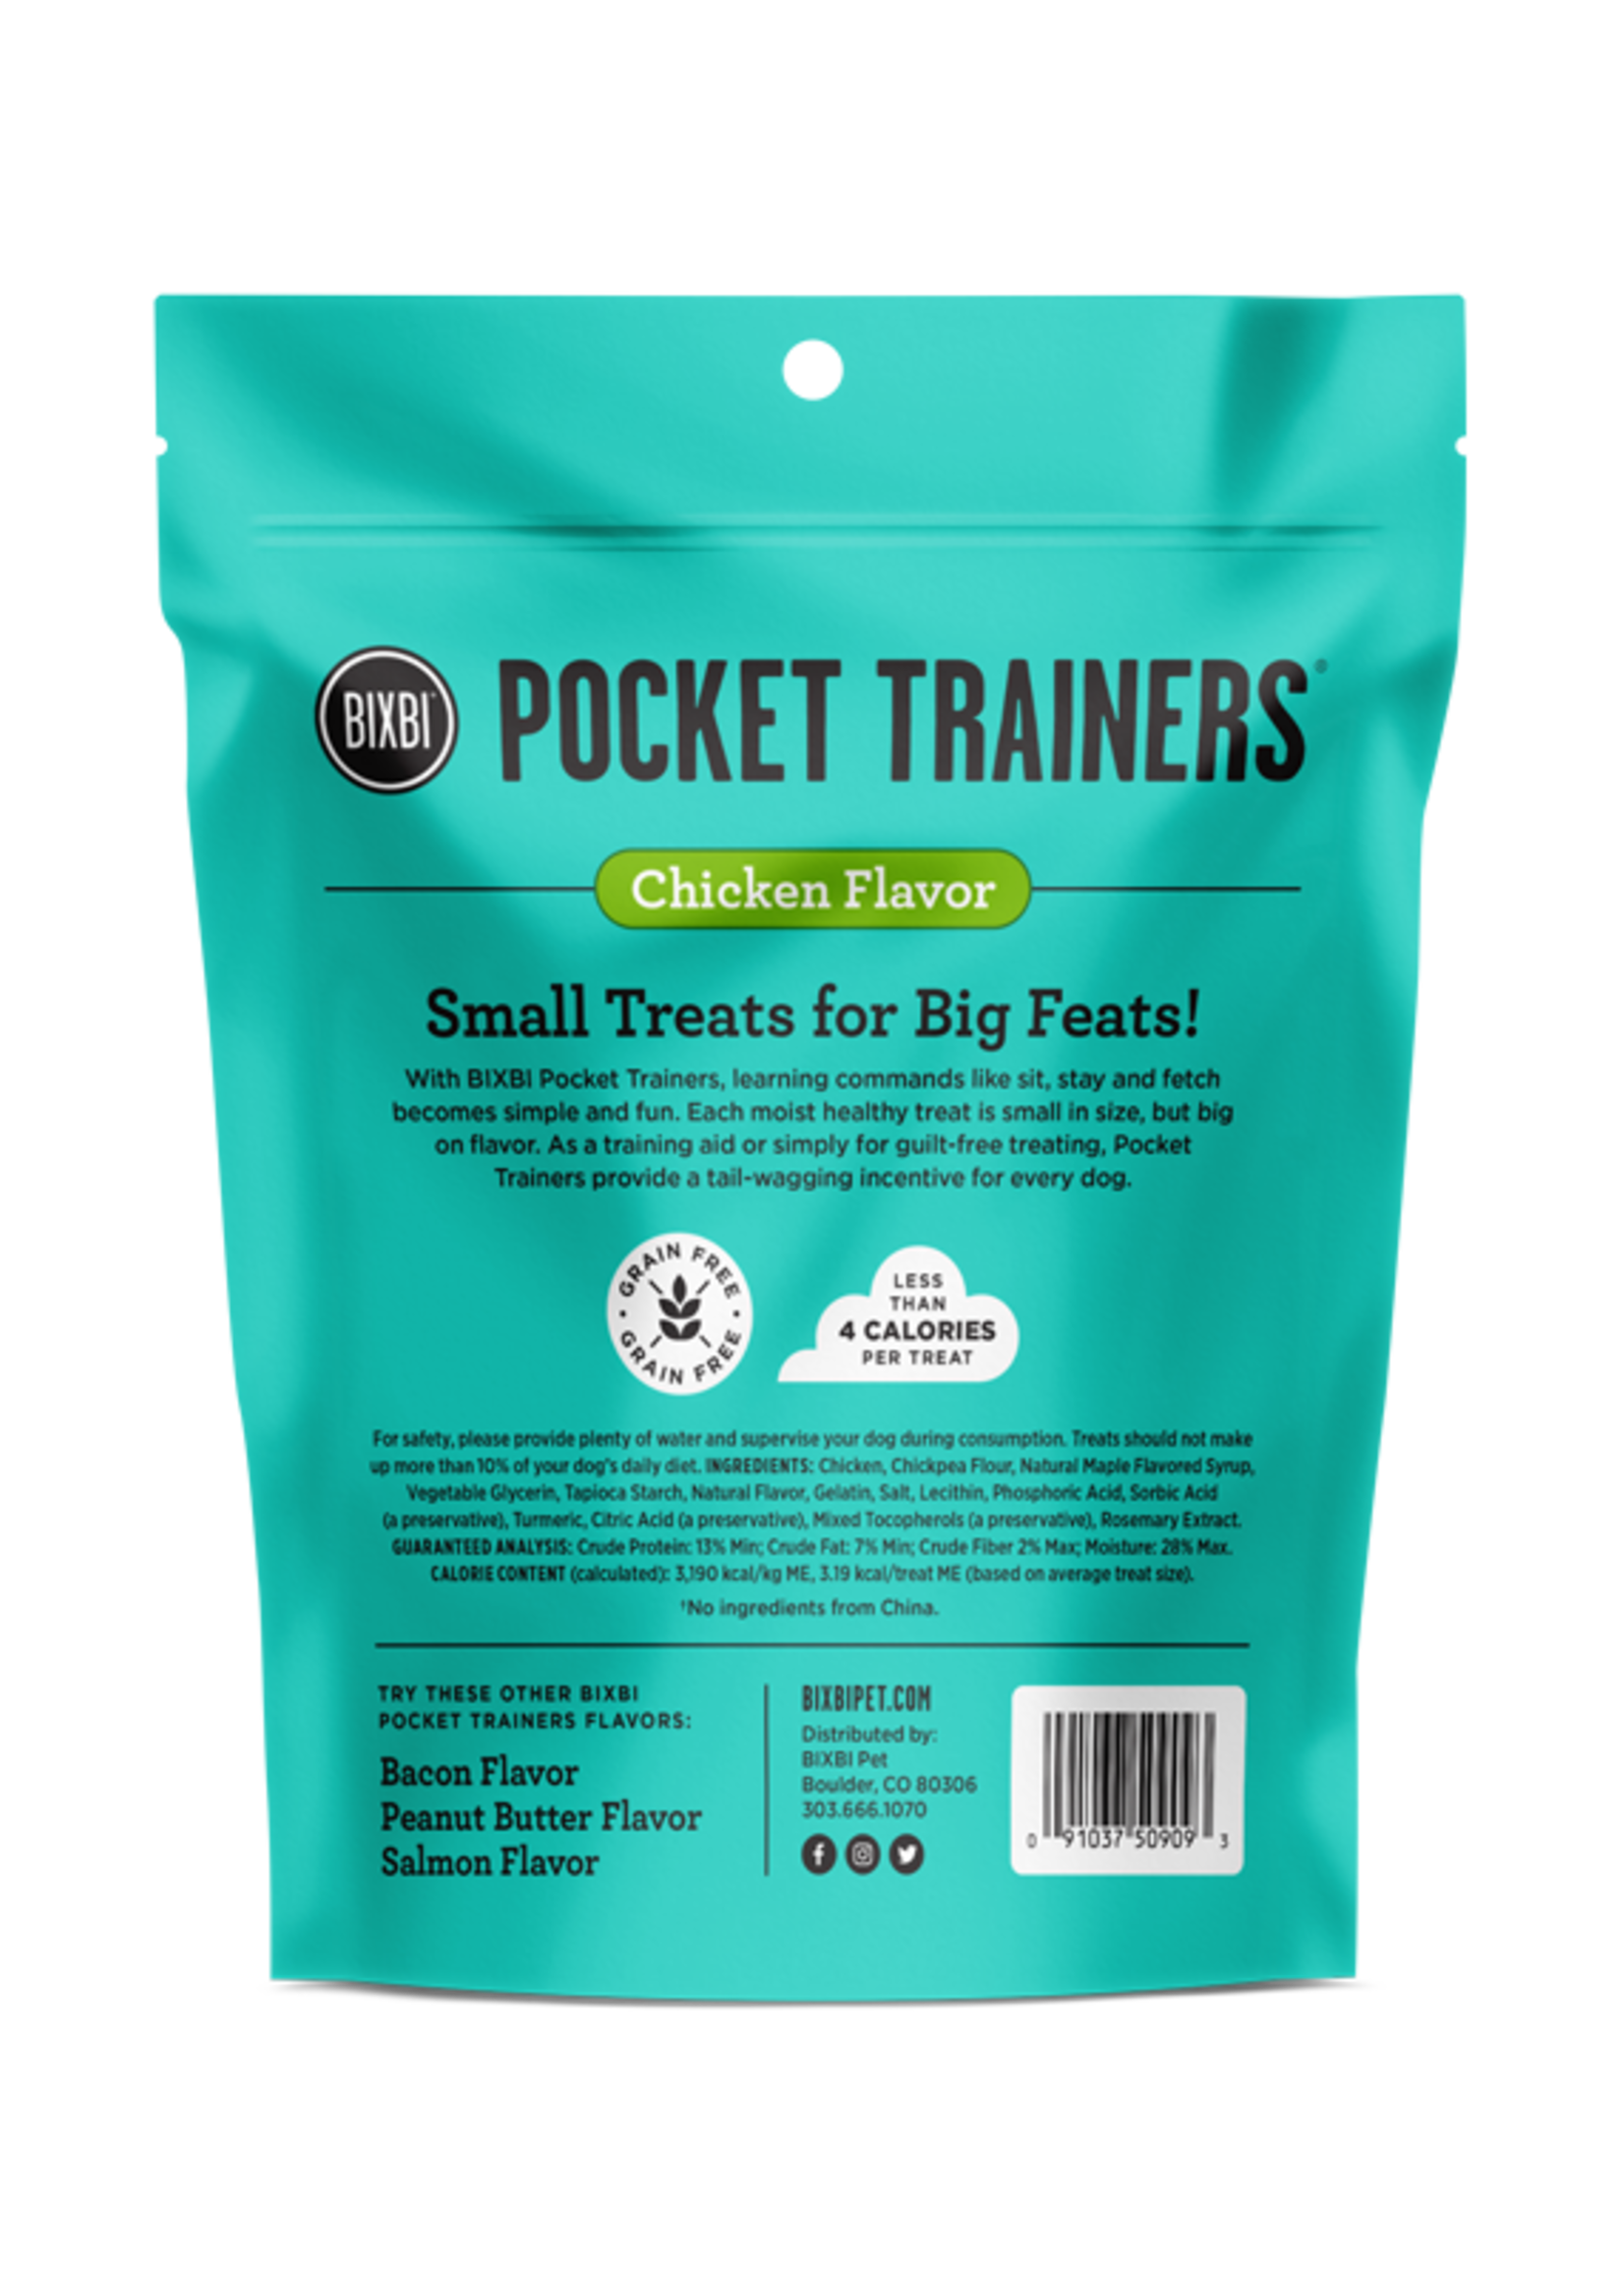 Bixbi Bixbi Pocket Trainers Chicken Flavor Dog Training Treats 6-oz